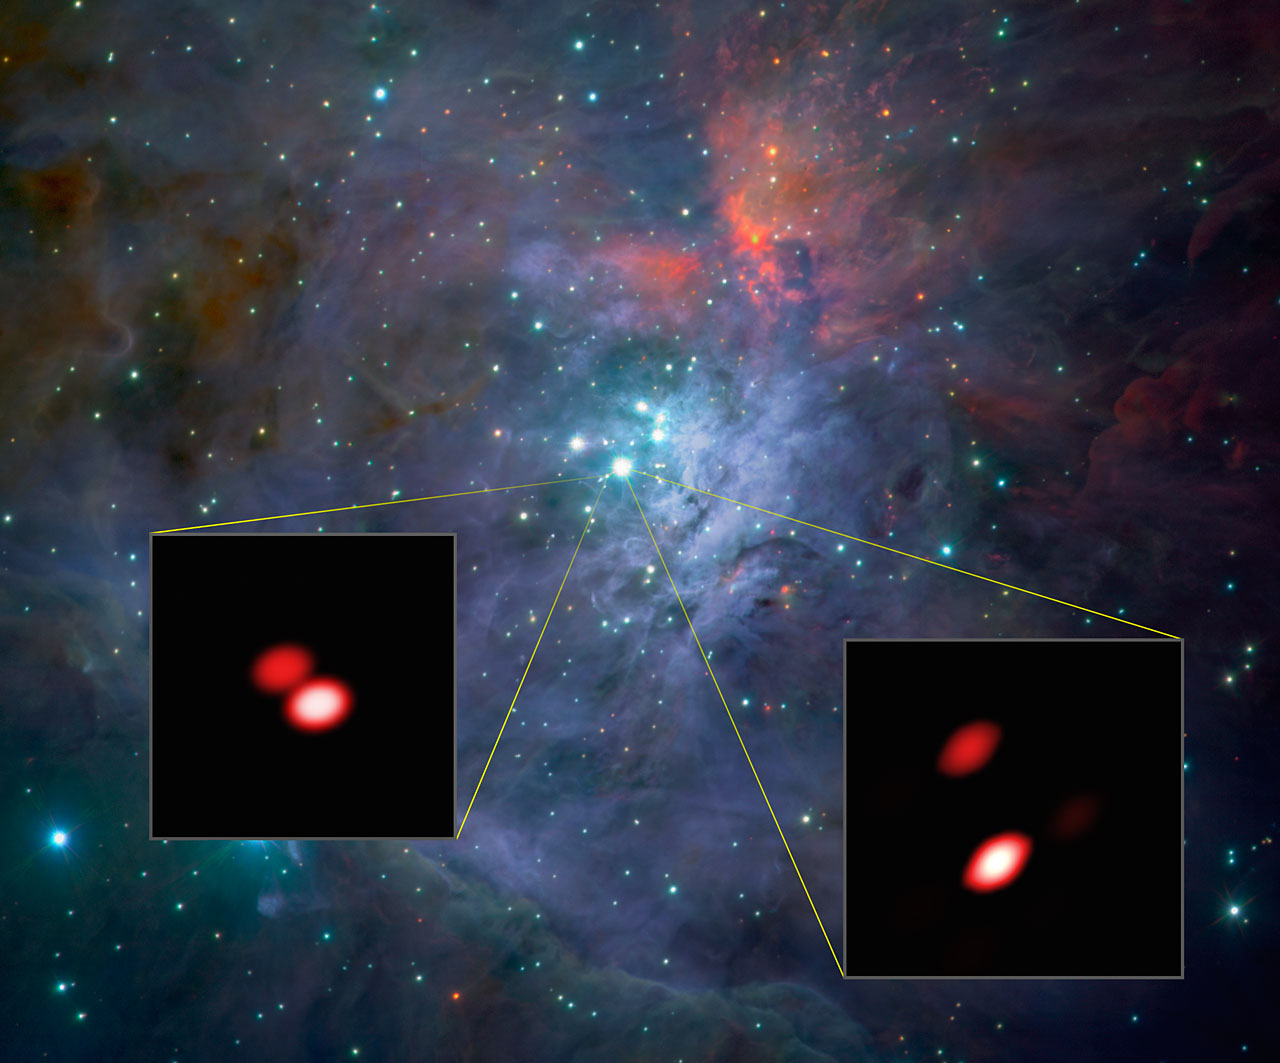 L'immagine di sfondo proviene dallo strumento ISAAC sul VLT dell'ESO. La veduta delle due stelle ottenuta da GRAVITY, negli inserti, rivela il maggior dettaglio raggiungibile, anche più di quanto si possa osservare con il telescopio spaziale Hubble della NASA/ESA. Crediti: ESO/GRAVITY consortium/NASA/ESA/M. McCaughrean